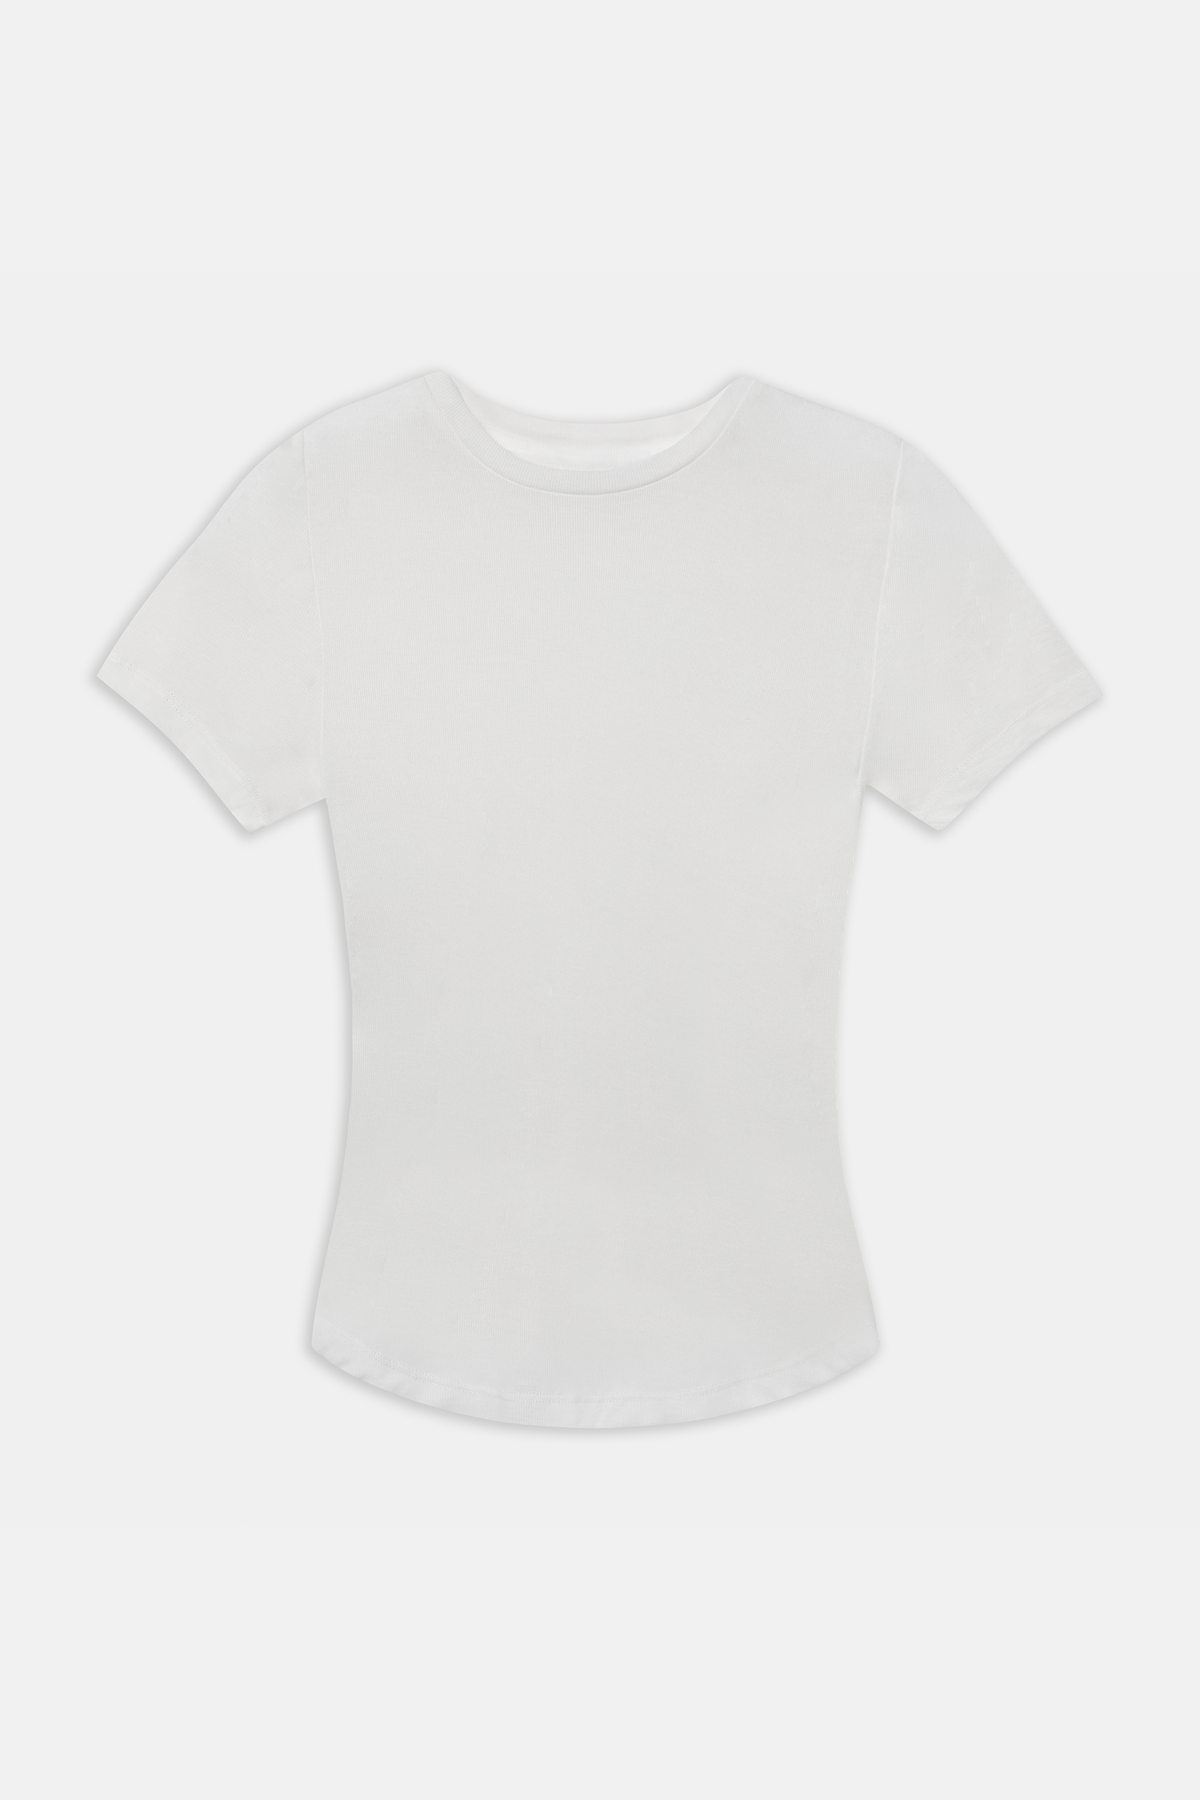 Semi Sheer 90's T Shirt - White